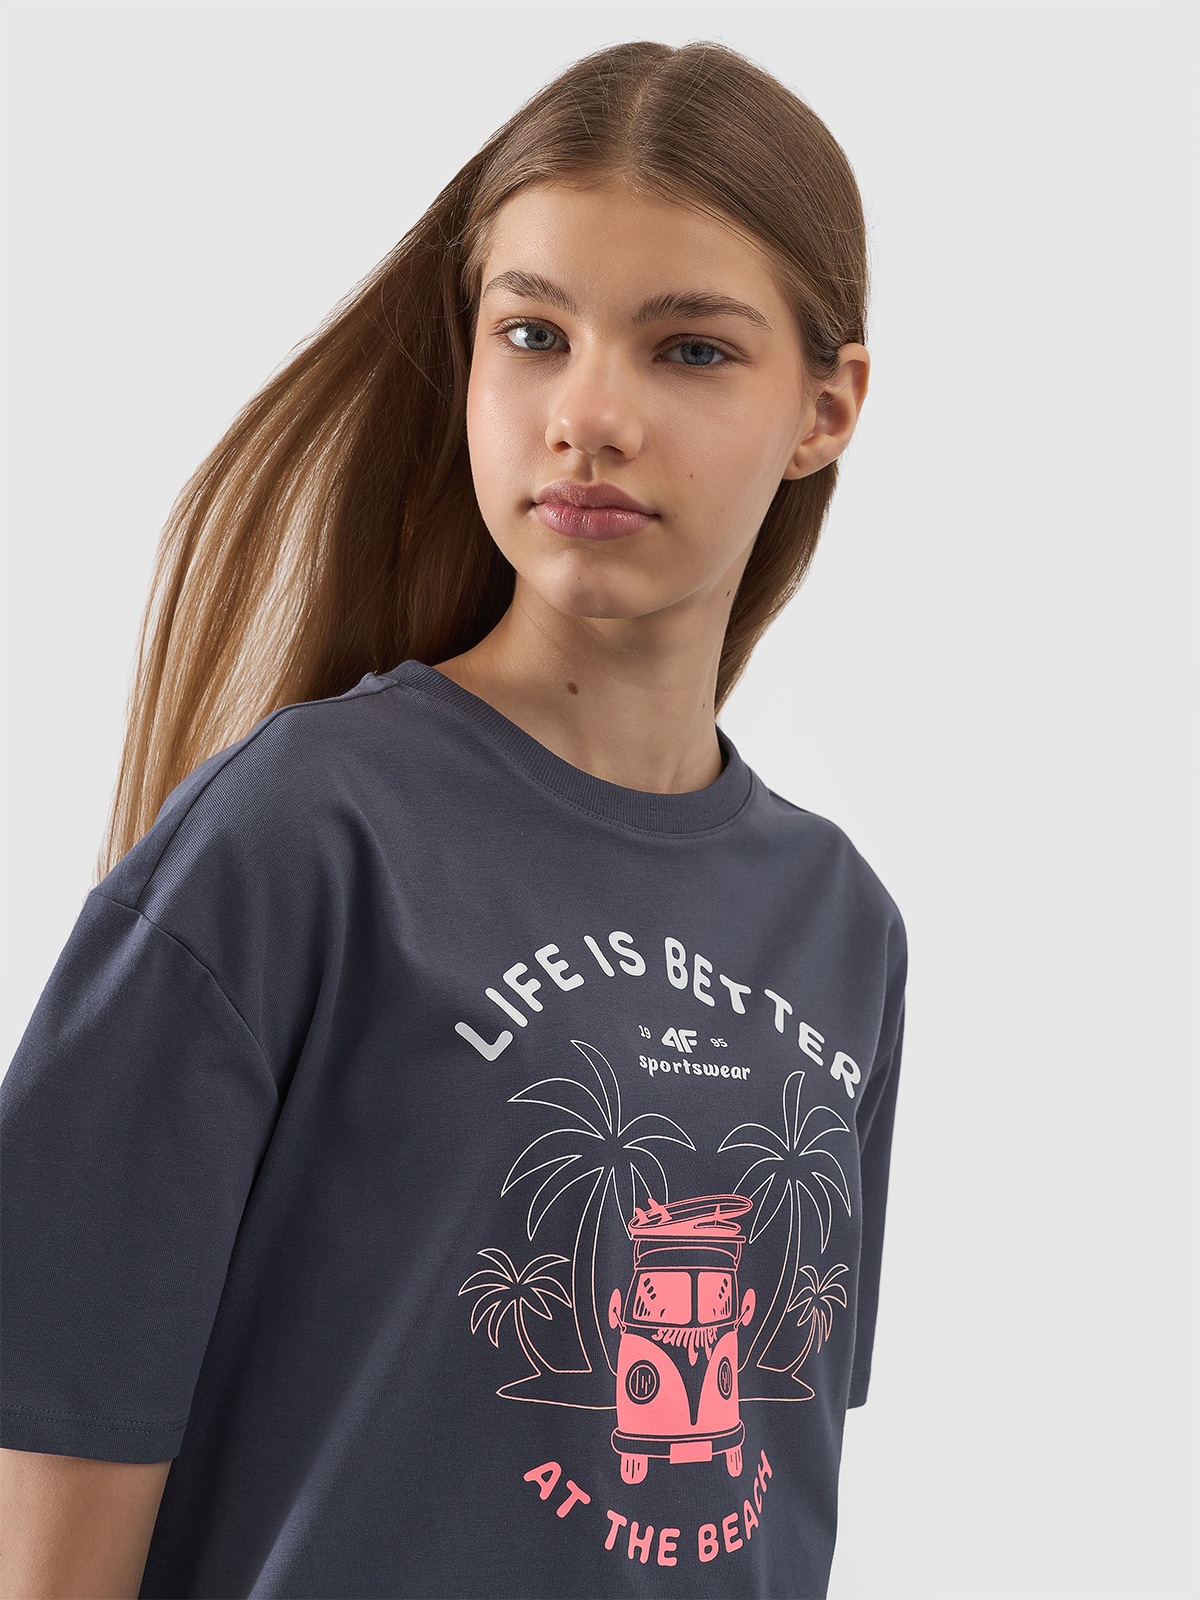 Dievčenské oversize tričko s potlačou - šedé